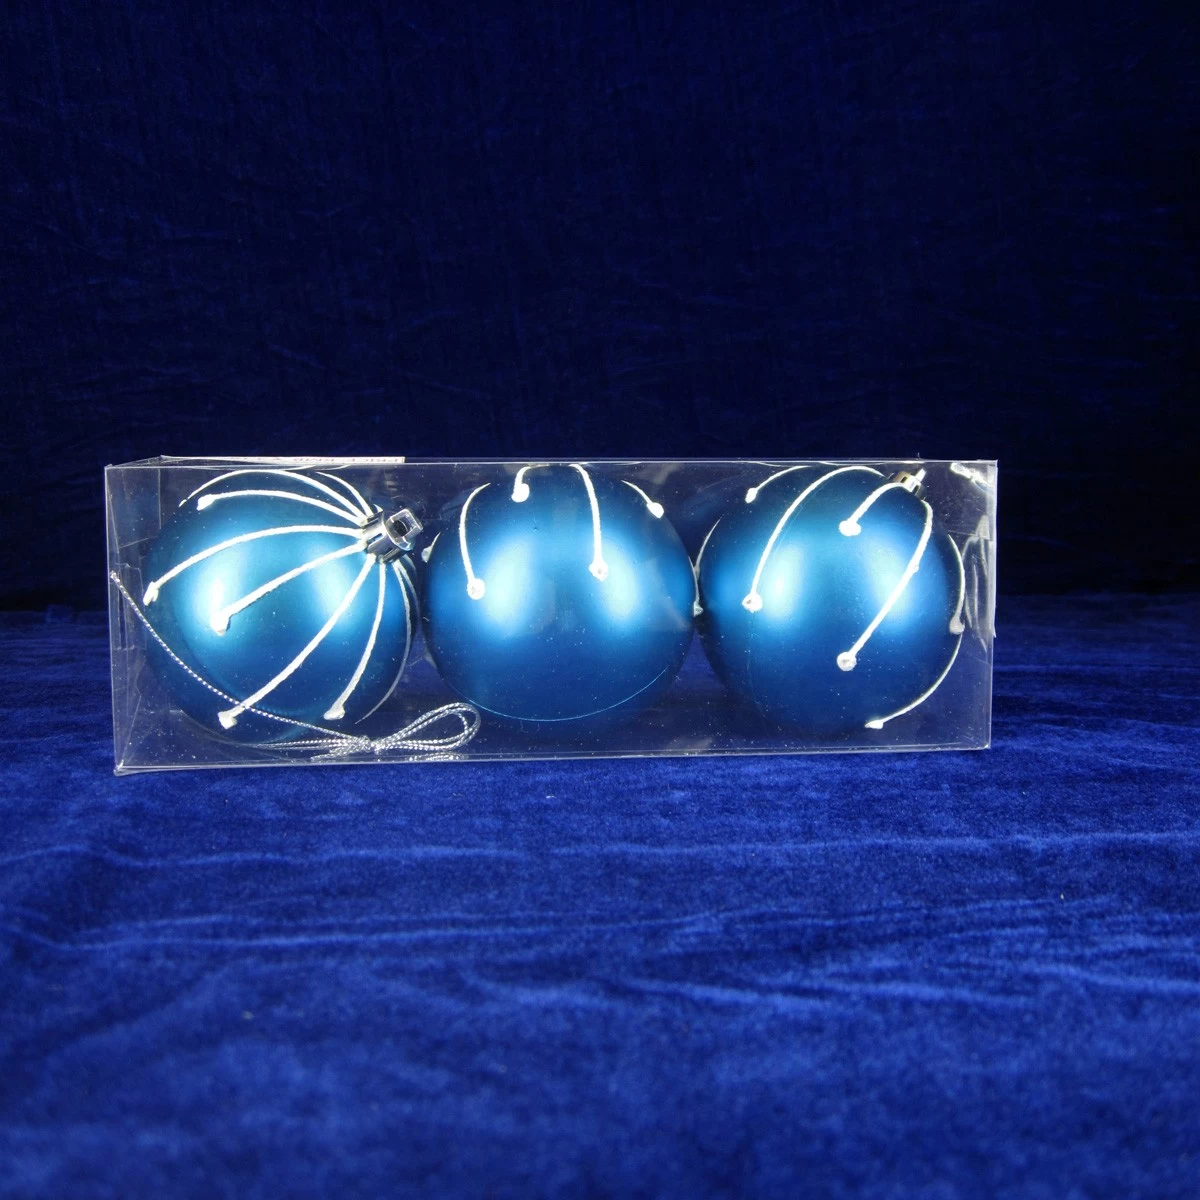 Chiny Boże Narodzenie ręcznie malowane plastikowe piłki Ornament producent